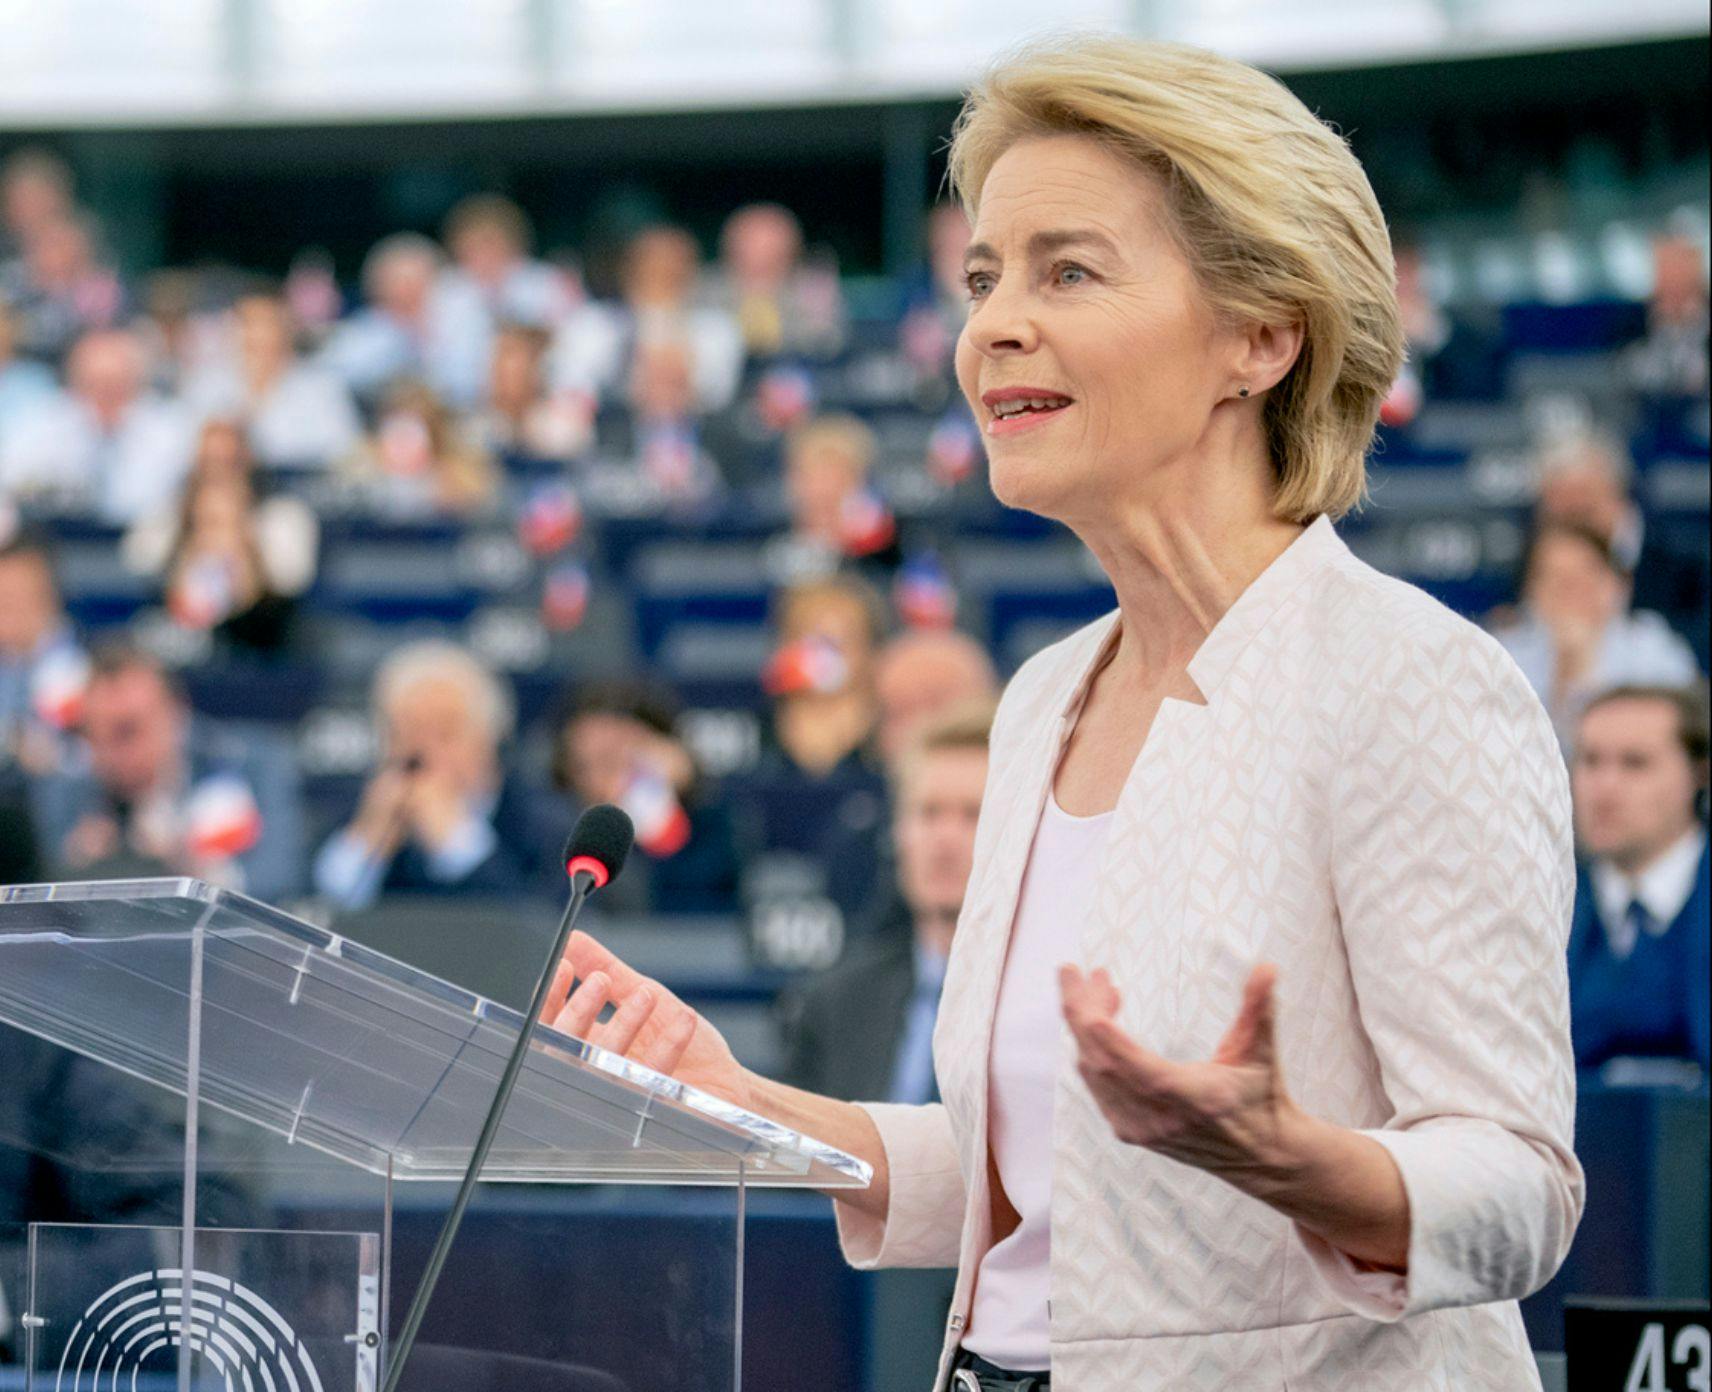 Ursula von der Leyen speaks to the European Parliament